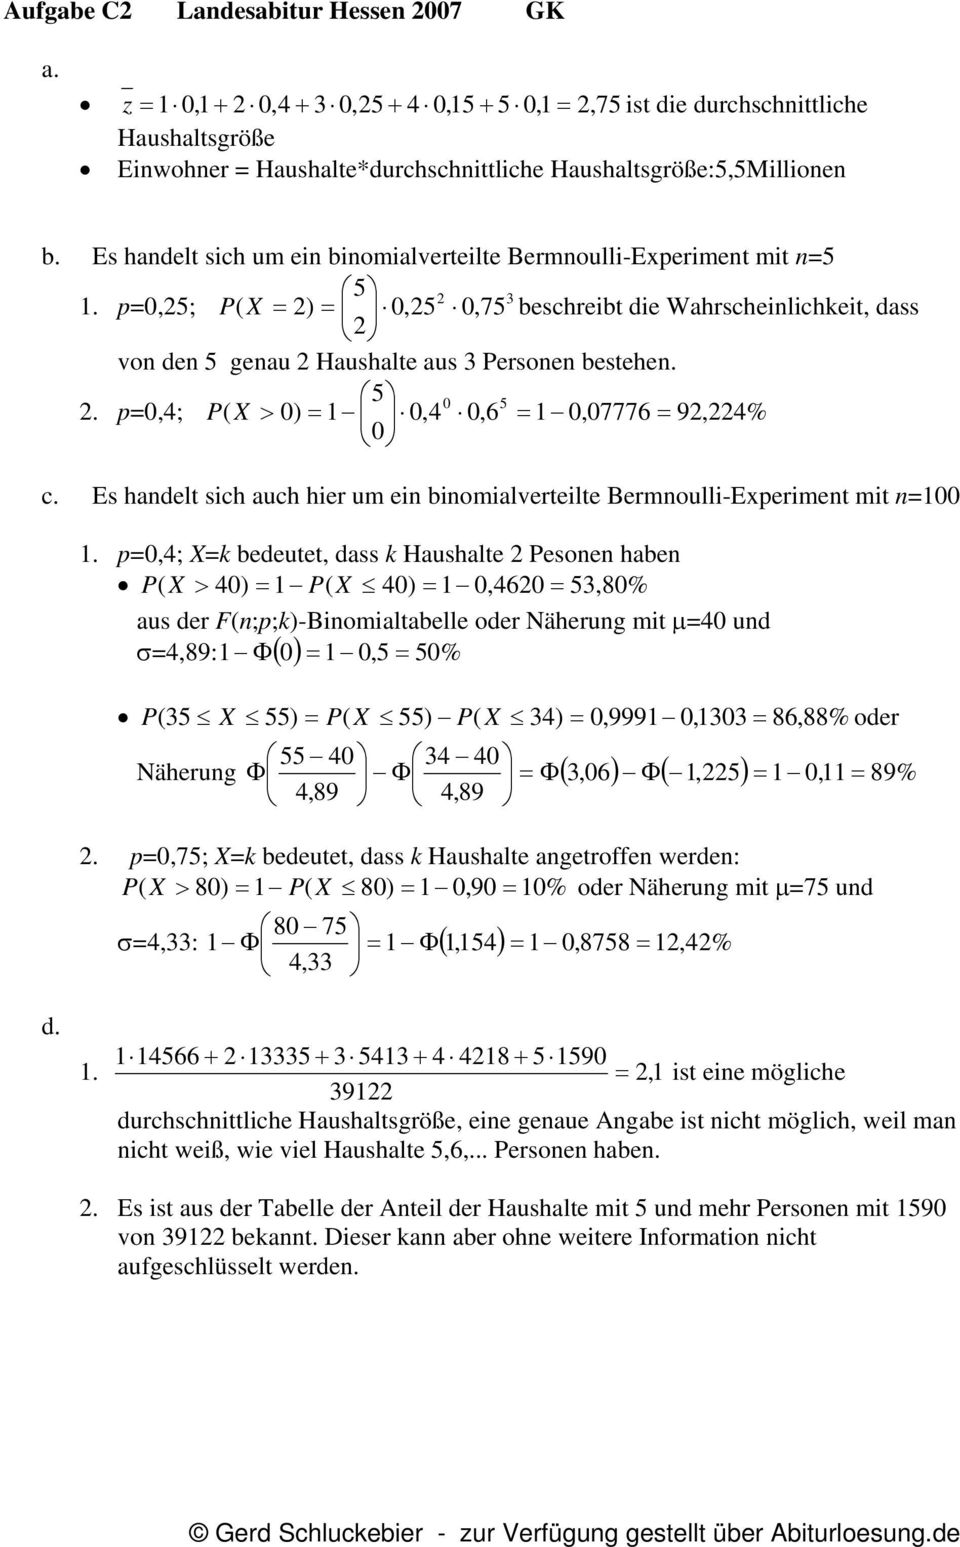 Es handelt sich um ein binomialverteilte Bermnoulli-Experiment mit n=5 5 2 3 1.